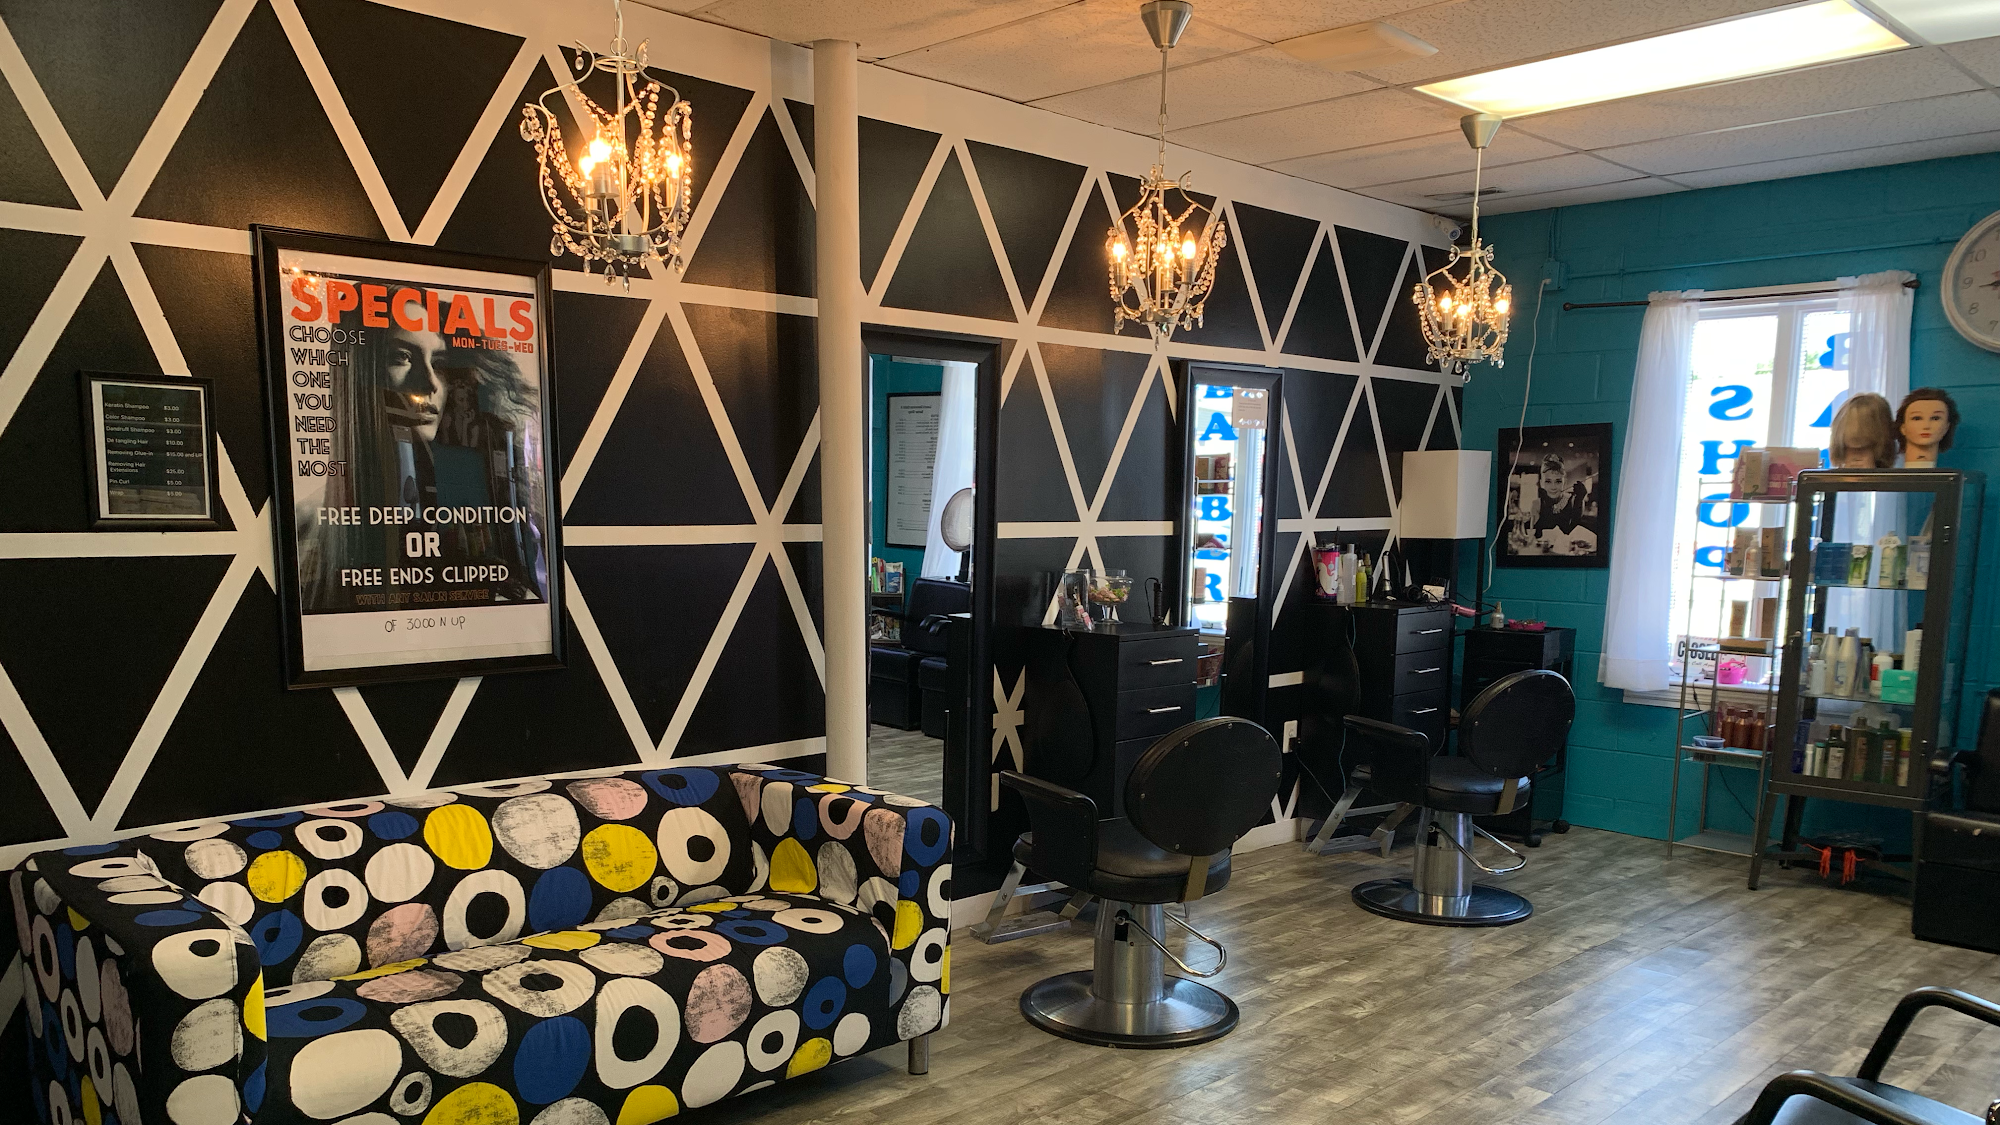 Luce's Dominican Salon & Barbershop